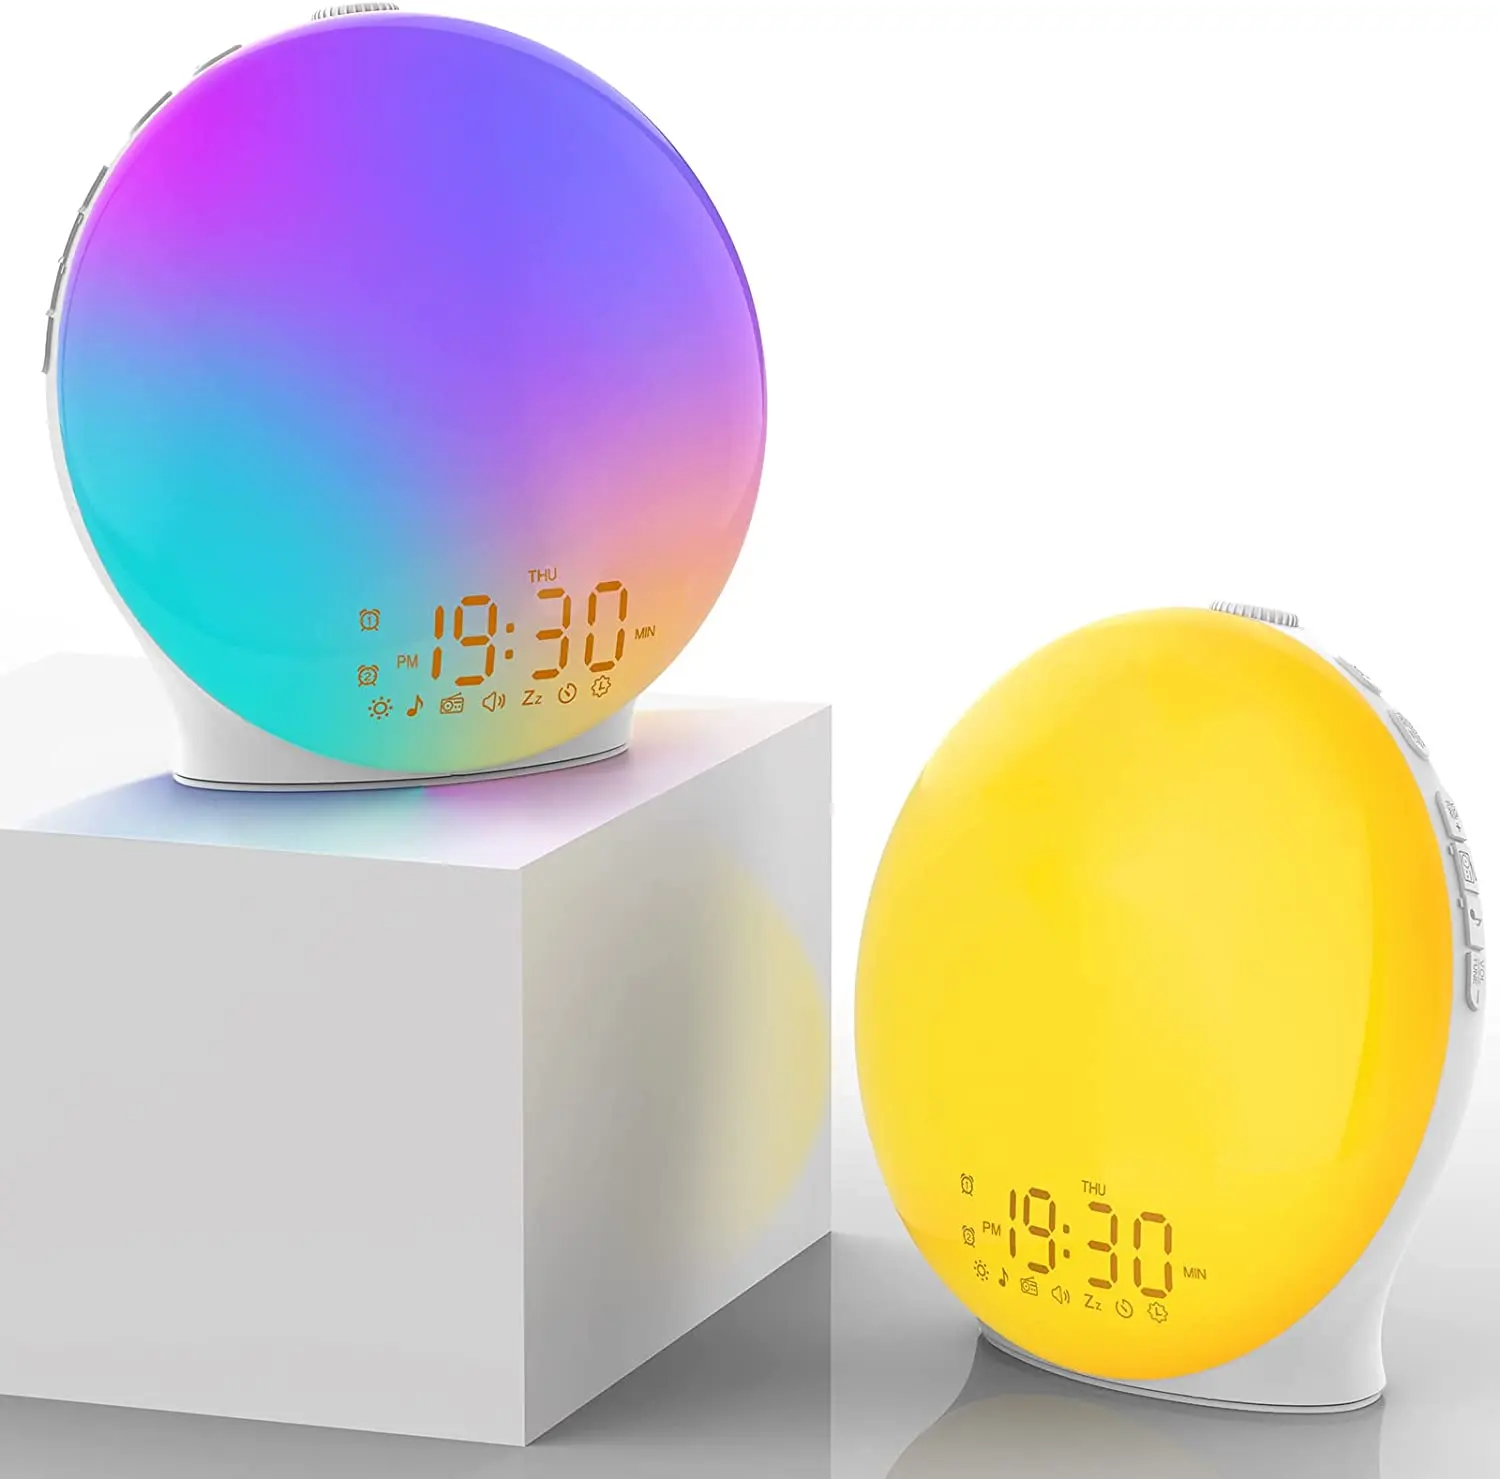 Neues Design LED-Weck lampe mit 8 weißen Geräusch geräuschen RGB BT/FM Smart Speaker mit doppelter Wecker funktion